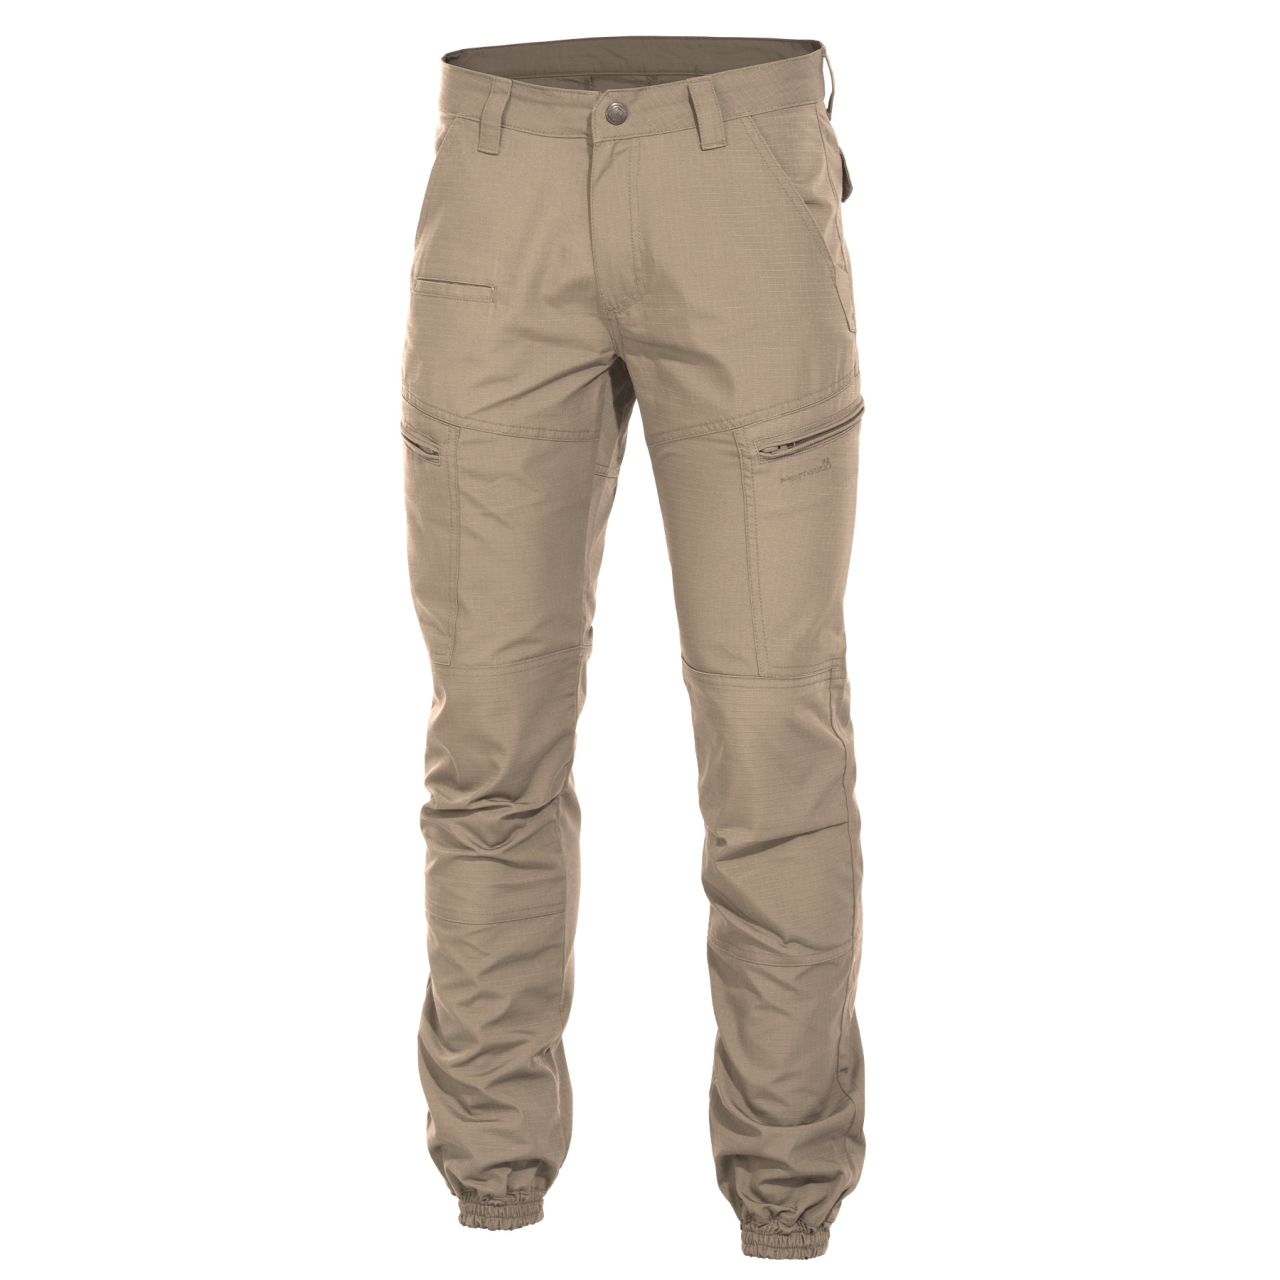 Kalhoty Pentagon Ypero - béžové, 48 XL